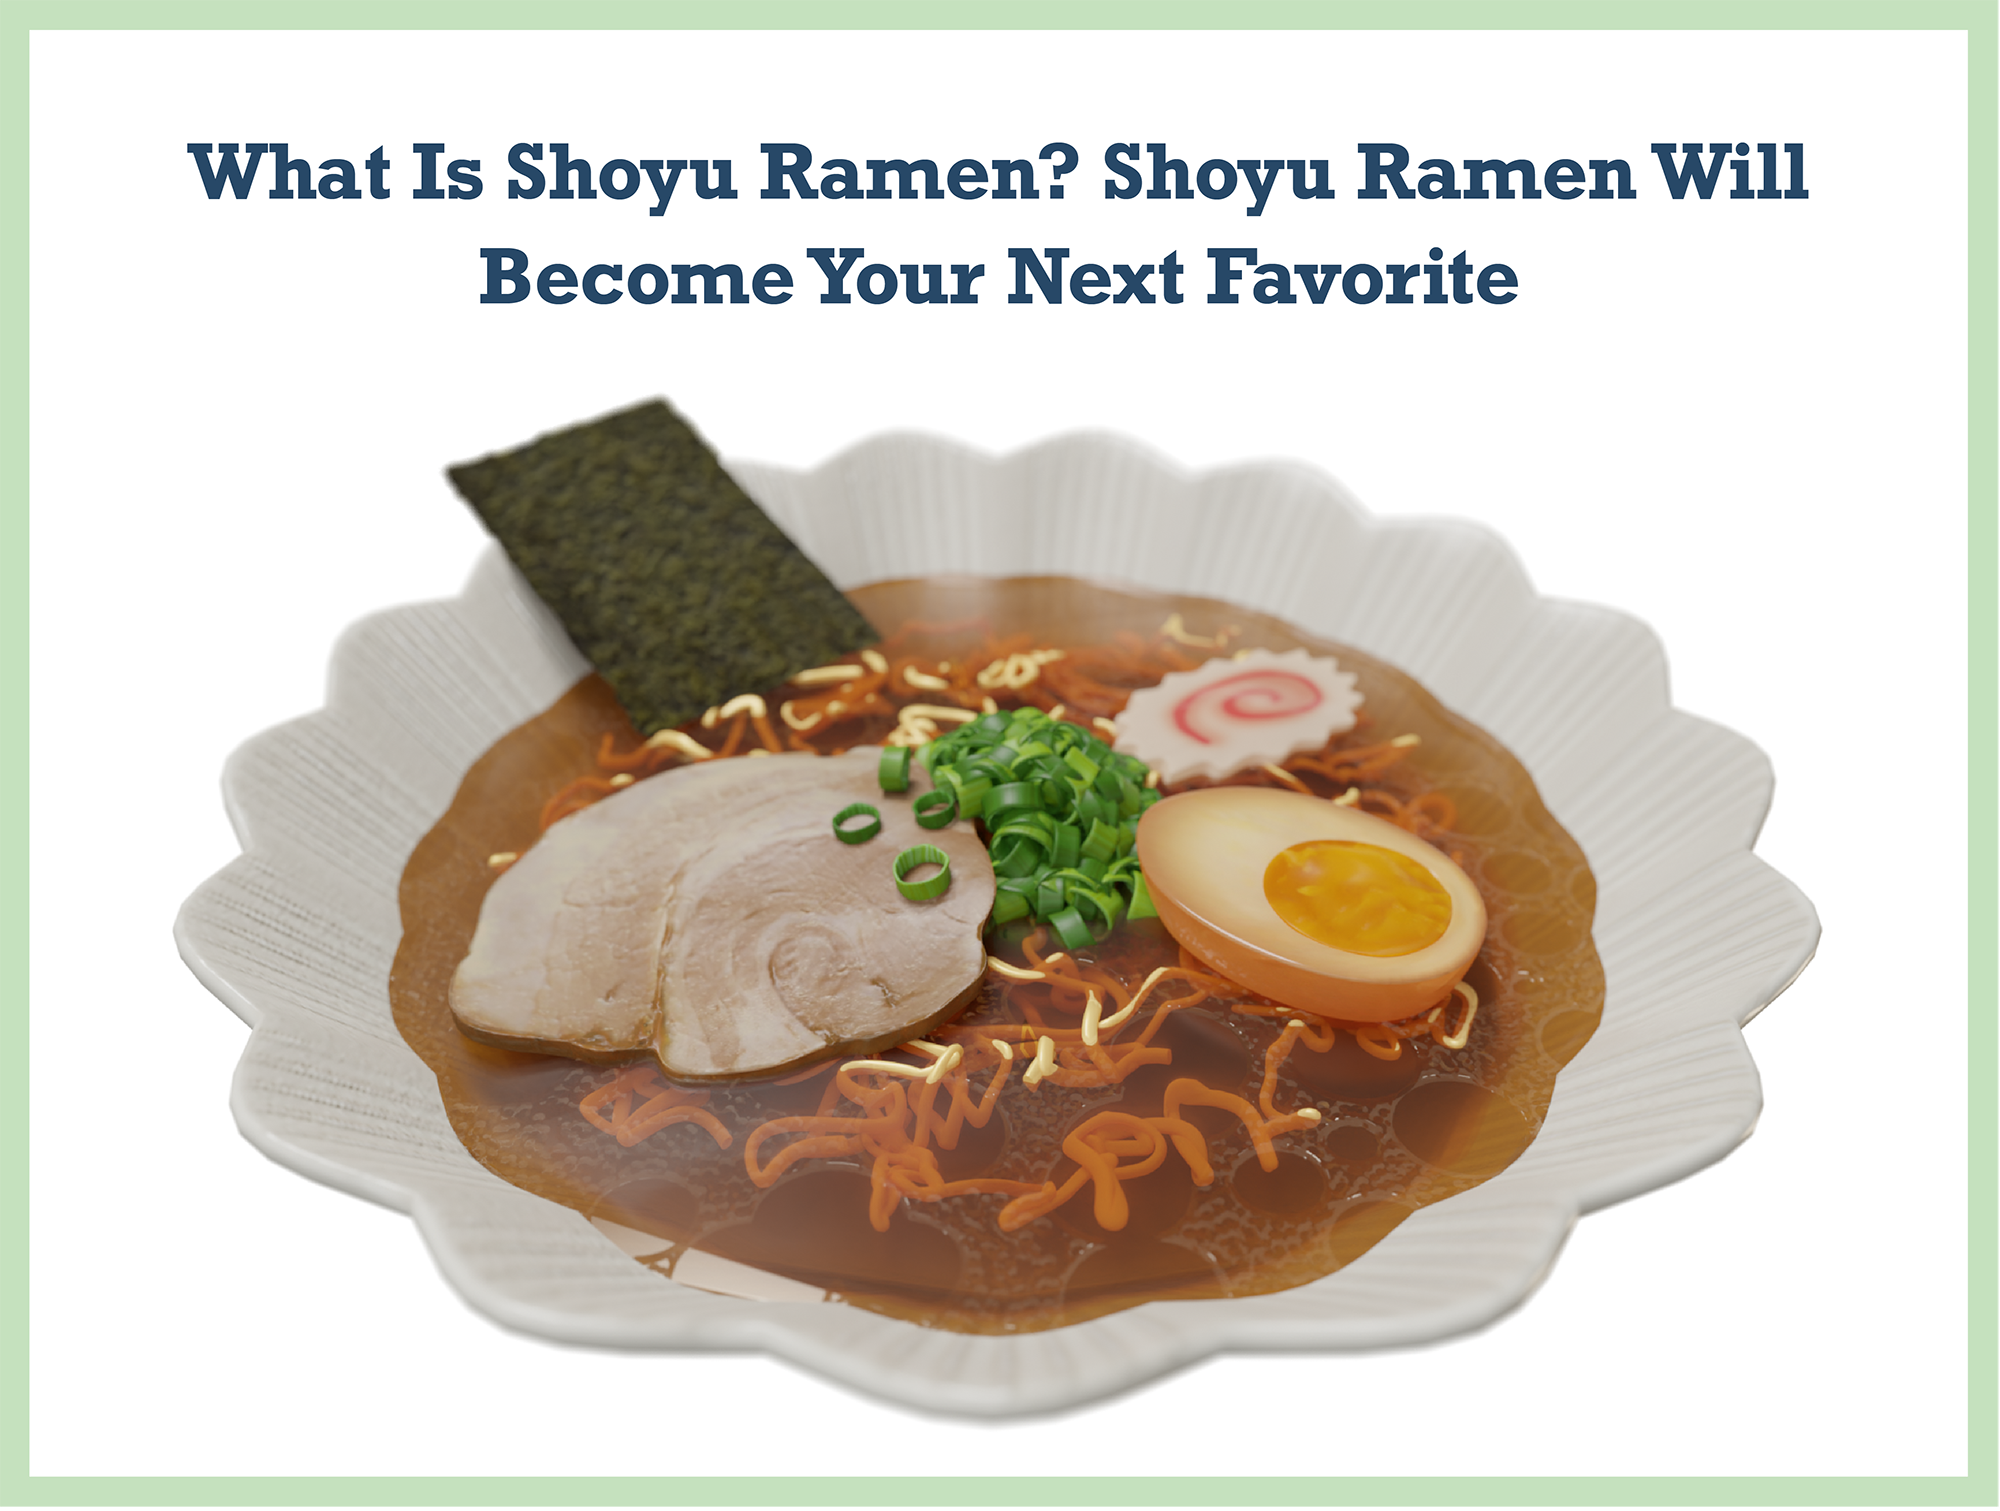 What Is Shoyu Ramen? Shoyu Ramen Will Become Your Next Favorite